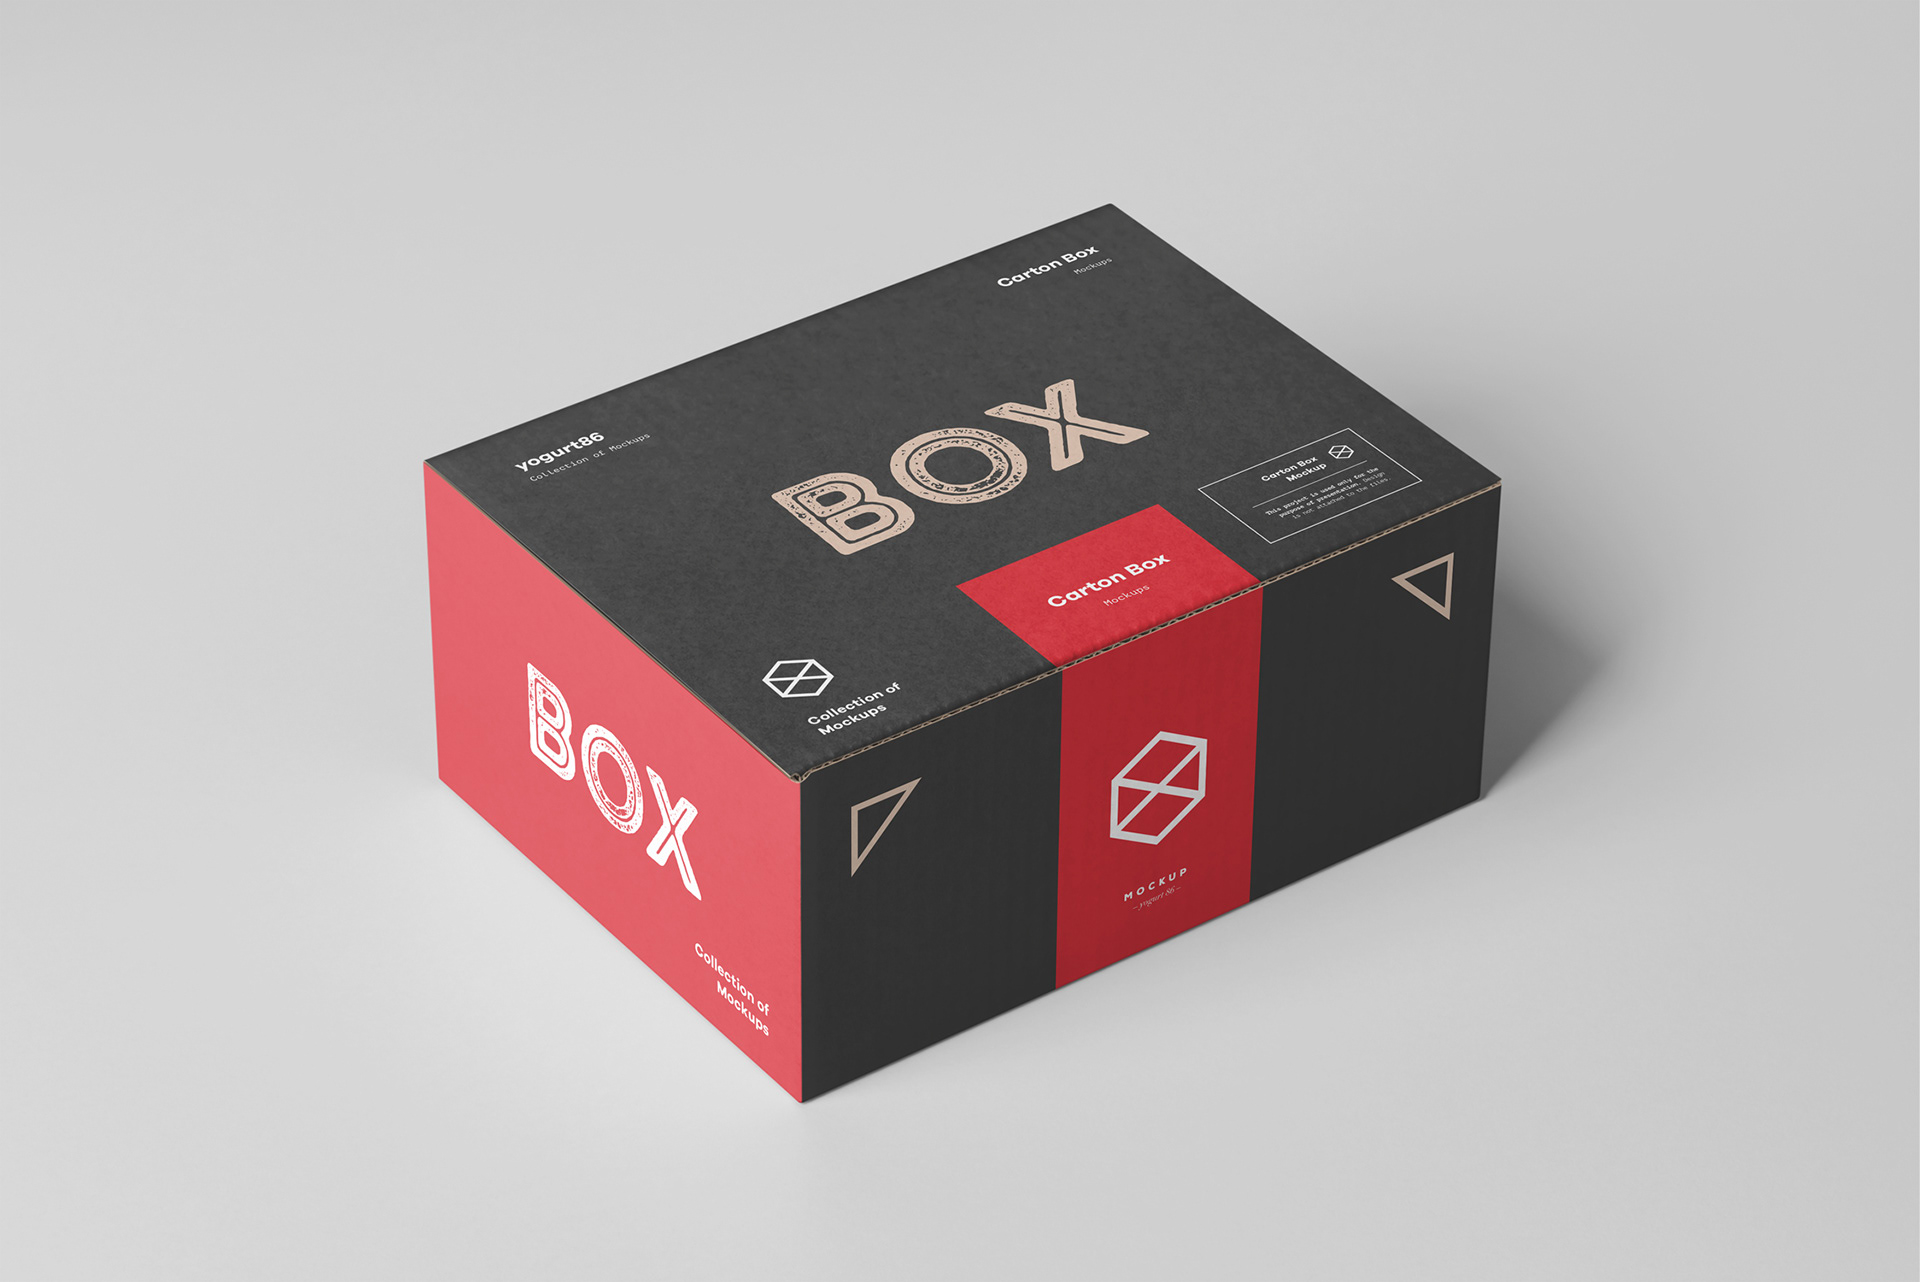 瓦楞纸产品包装箱外观设计展示样机模板素材 carton box mock